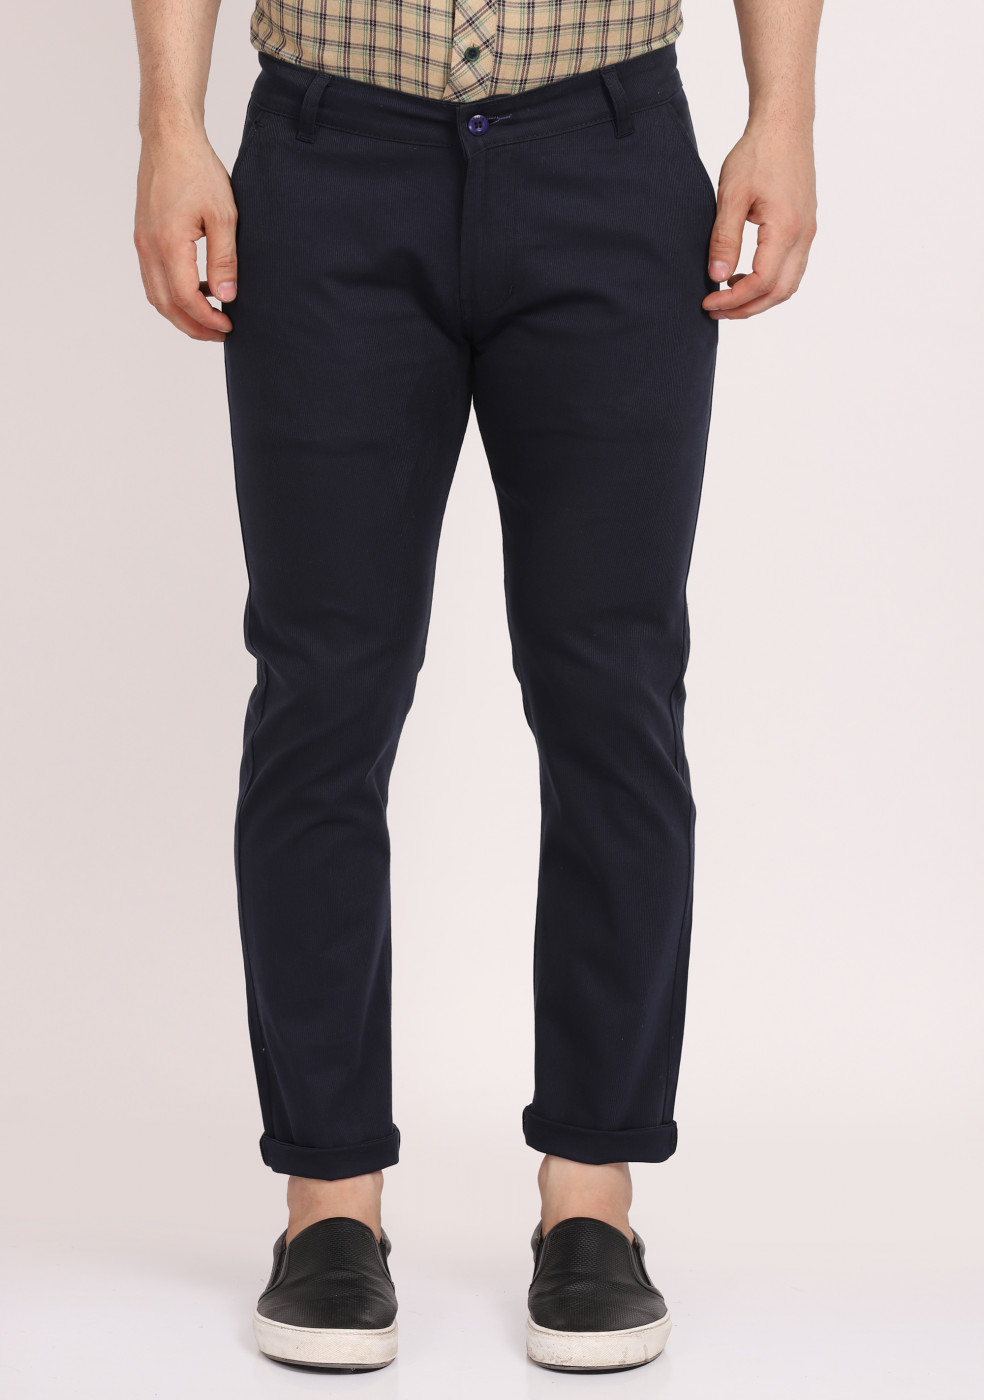 ASHTOM Navy Cotton Formal Trouser Regular Fit For Men